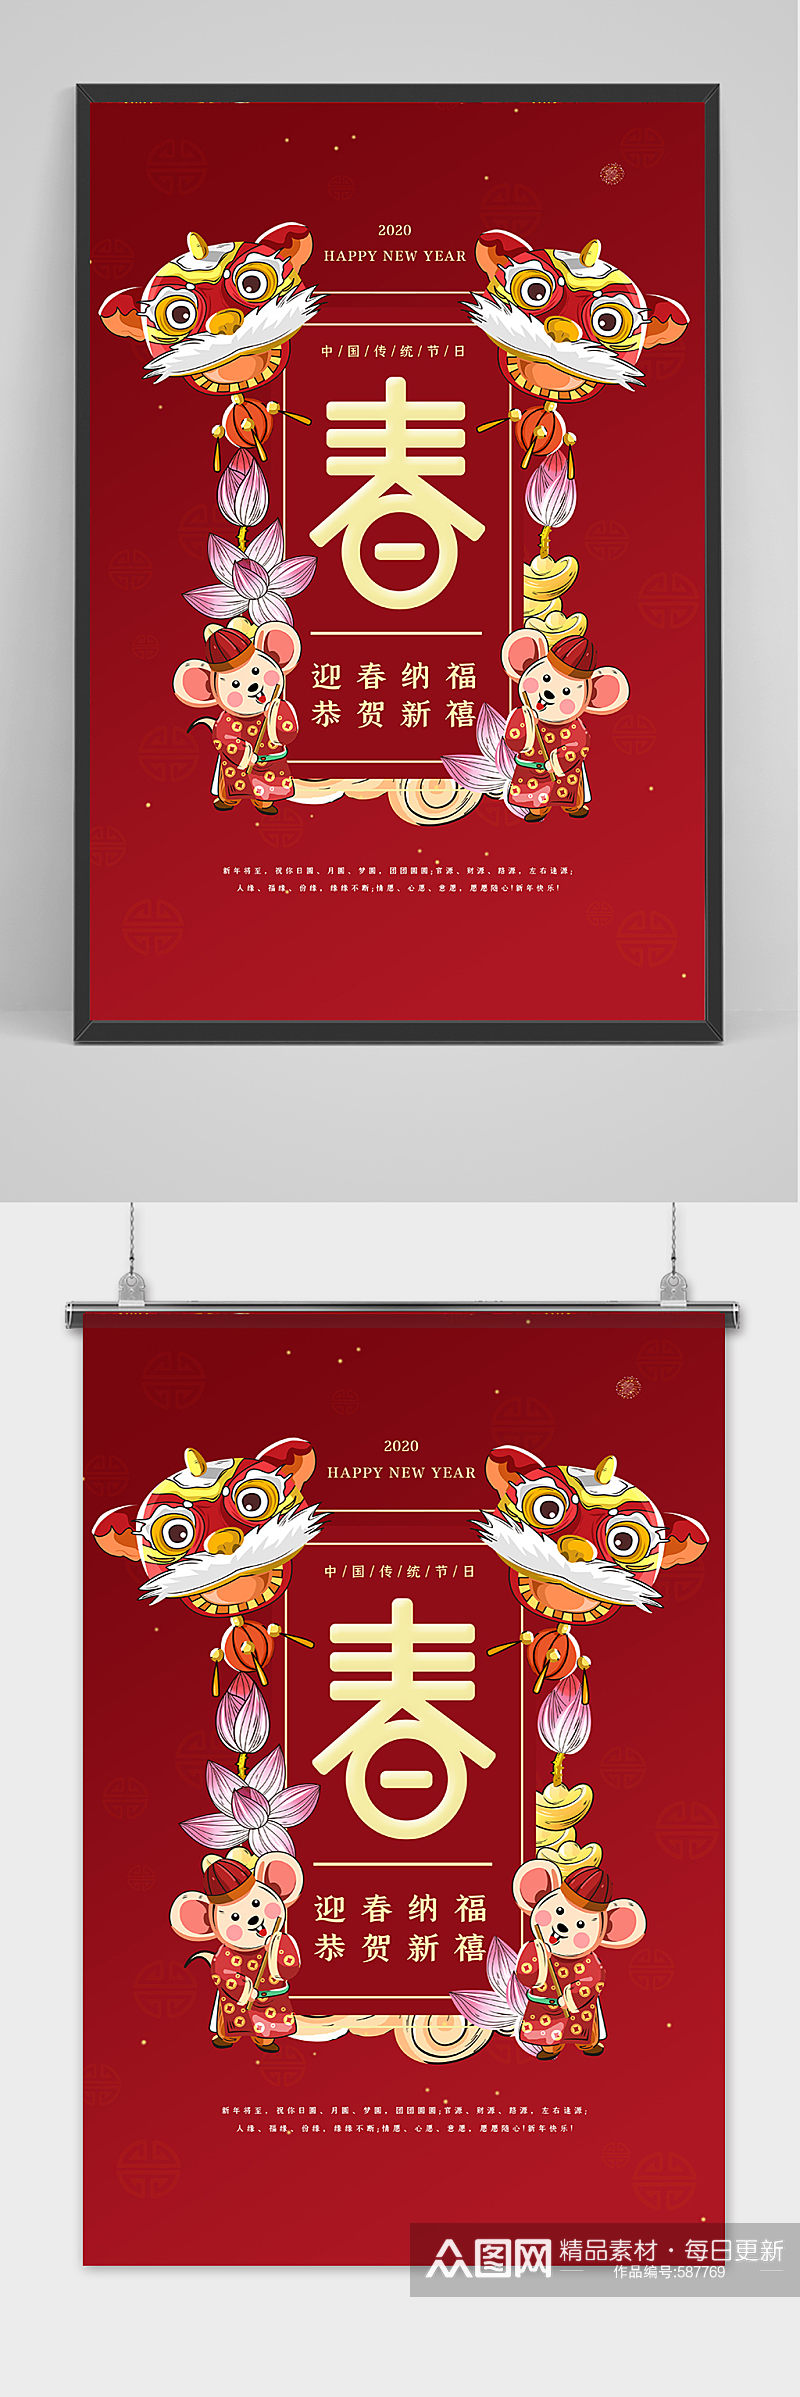 2020年鼠年春节迎新春海报设计素材